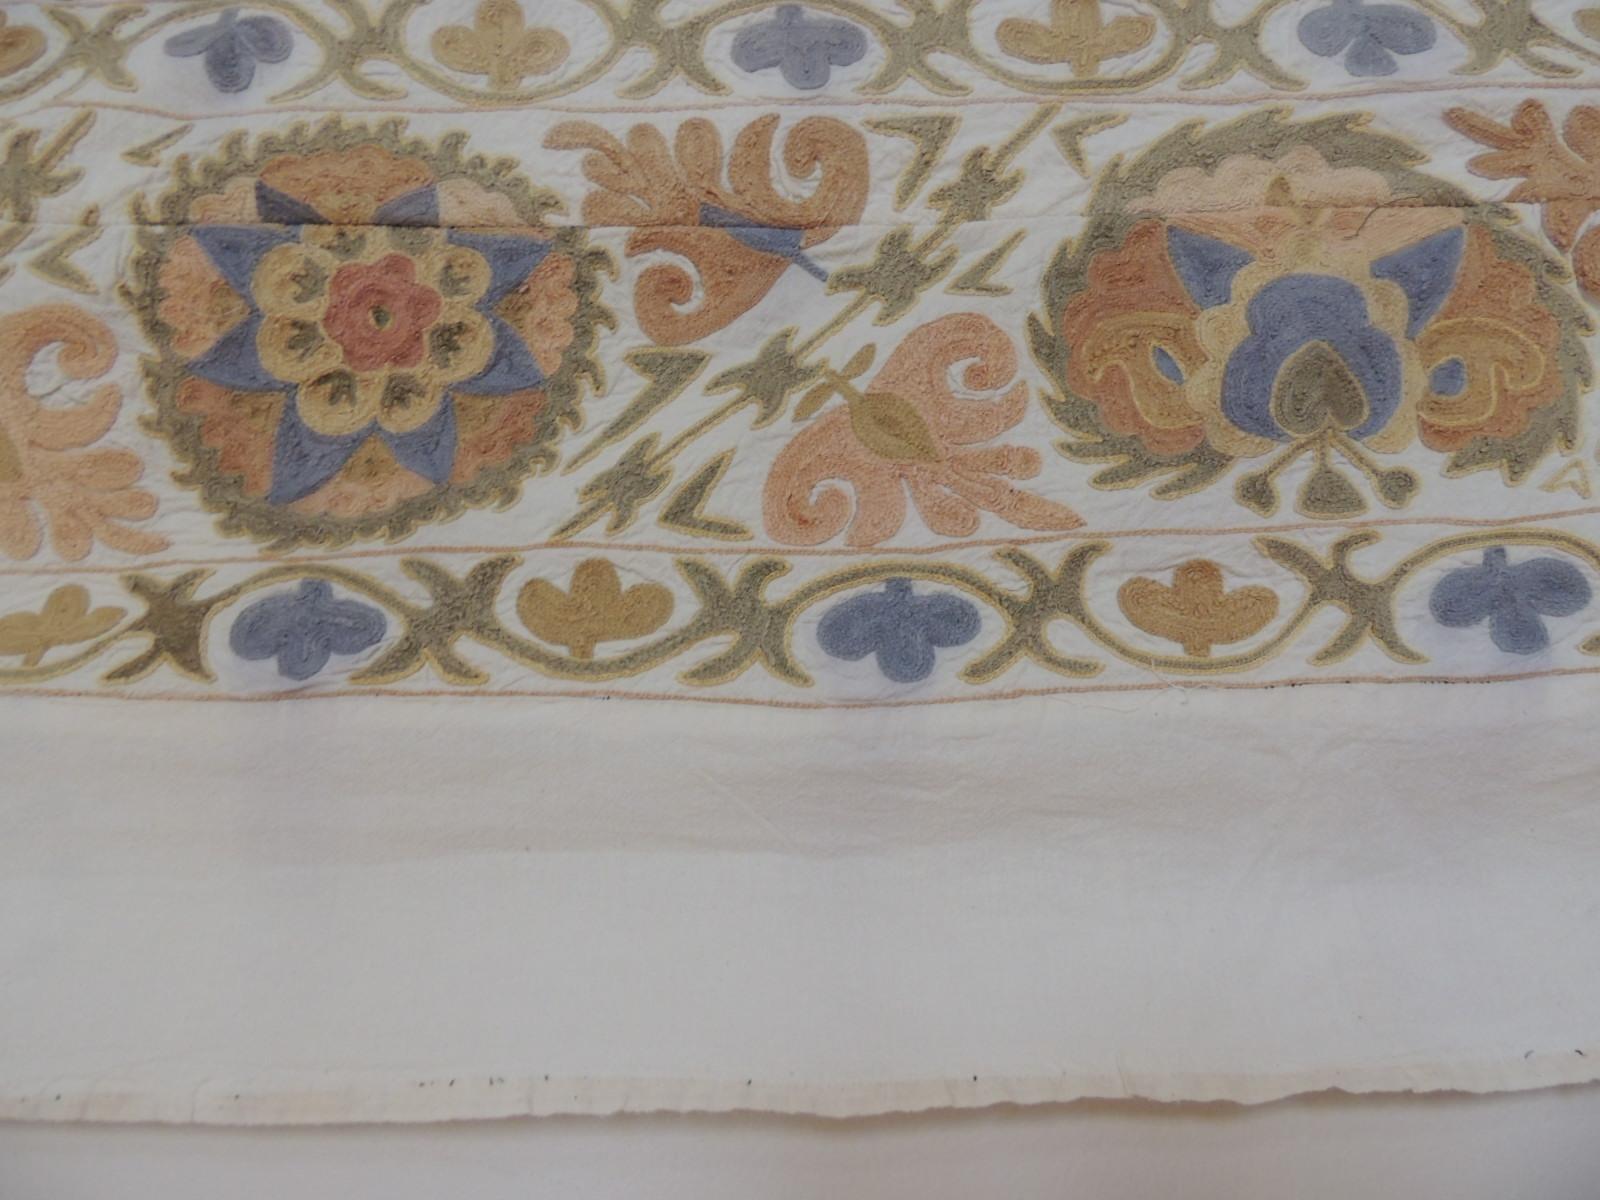 Cotton Vintage Peach and Grey Uzbekistan Embroidery Suzani Textile Panel